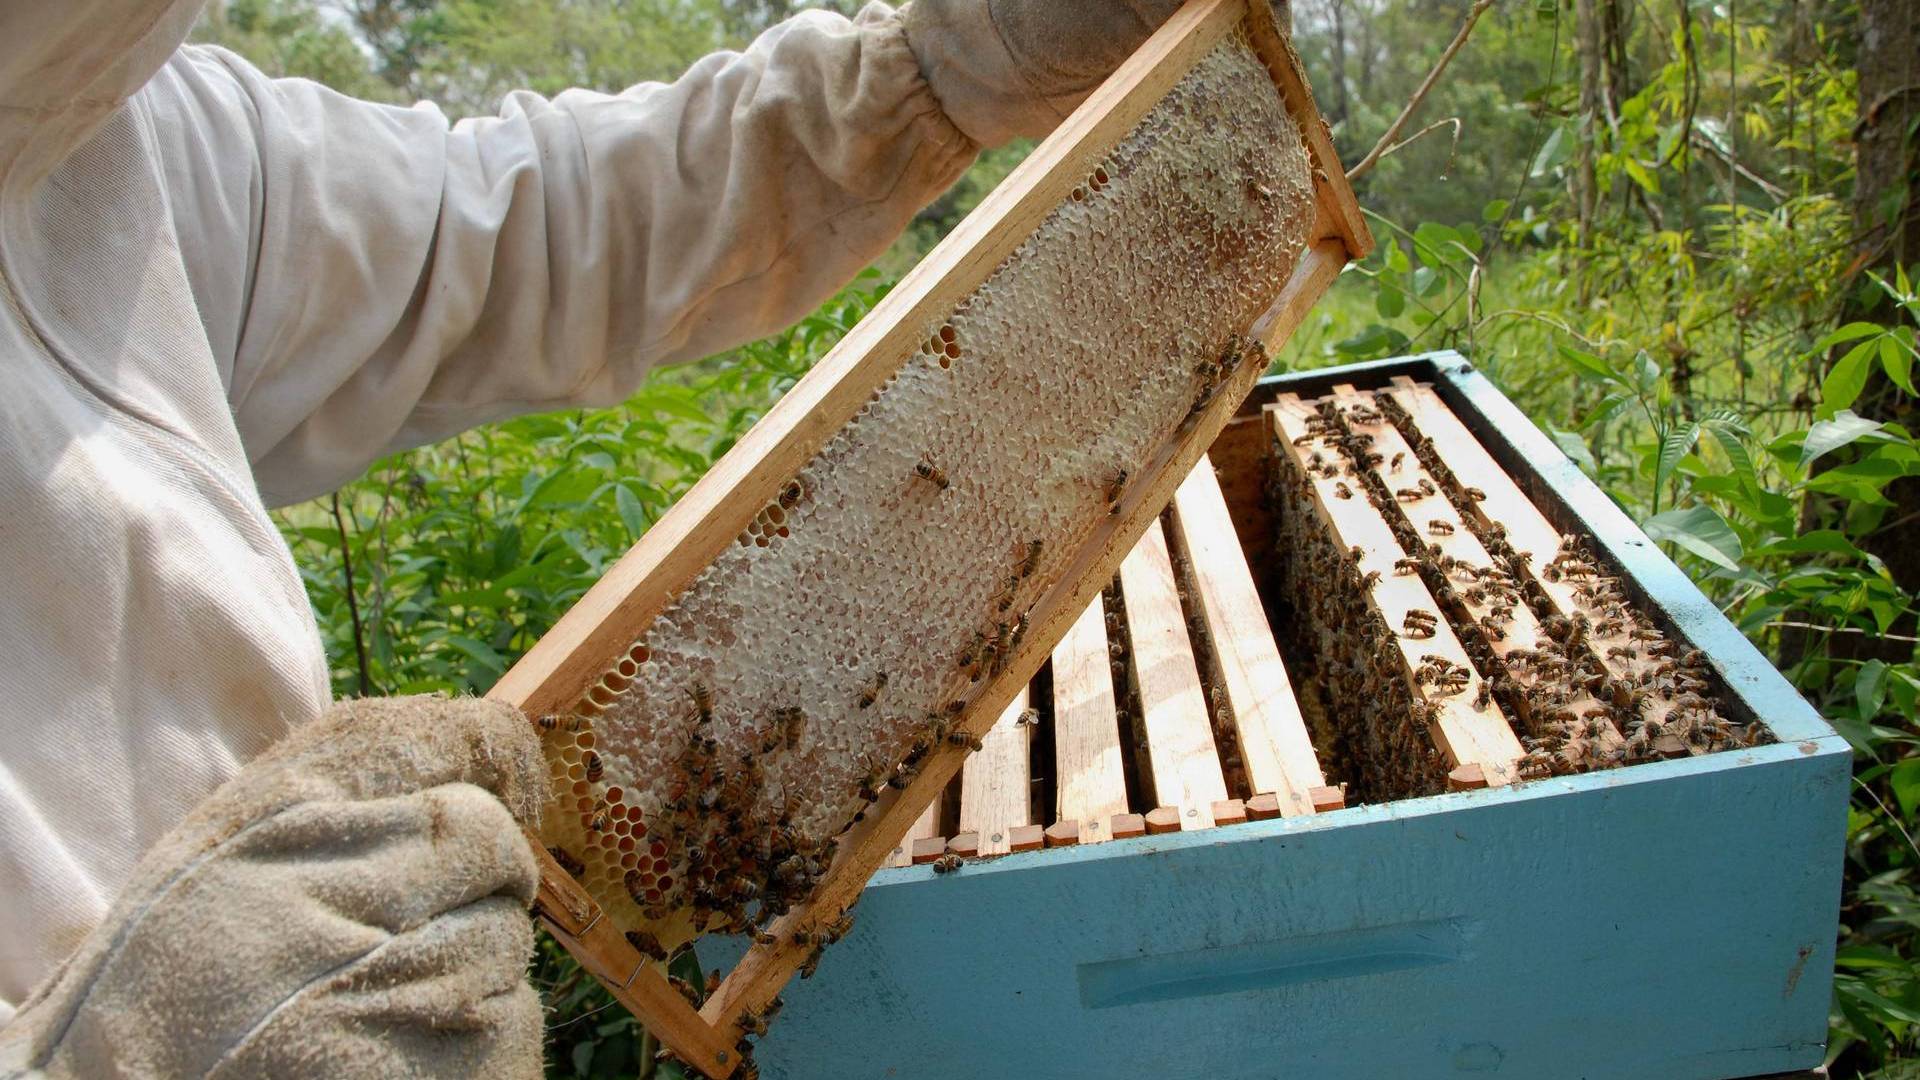 Paraná inicia 2021 como segundo maior exportador de mel in natura